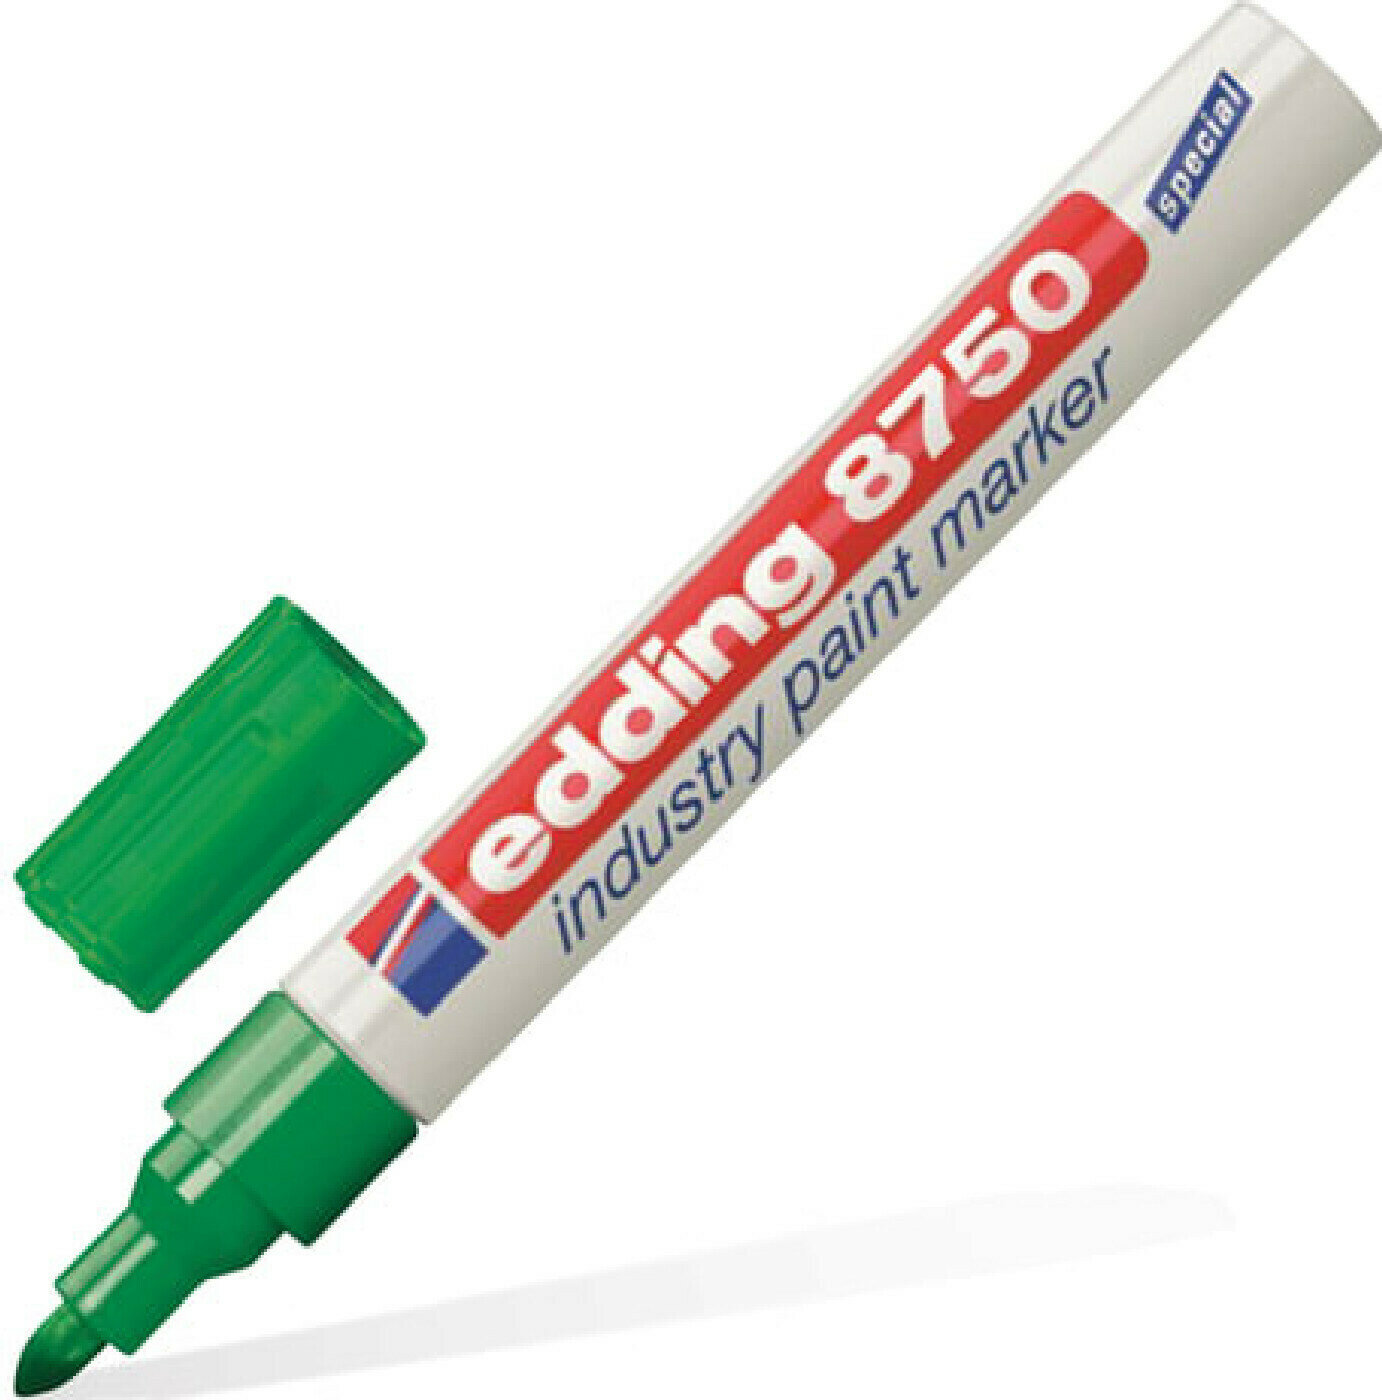 Маркер-краска Маркер-краска лаковый (paint marker) EDDING 8750, зеленый, 2-4 мм, круглый наконечник, алюминиевый корпус, Е-8750/4